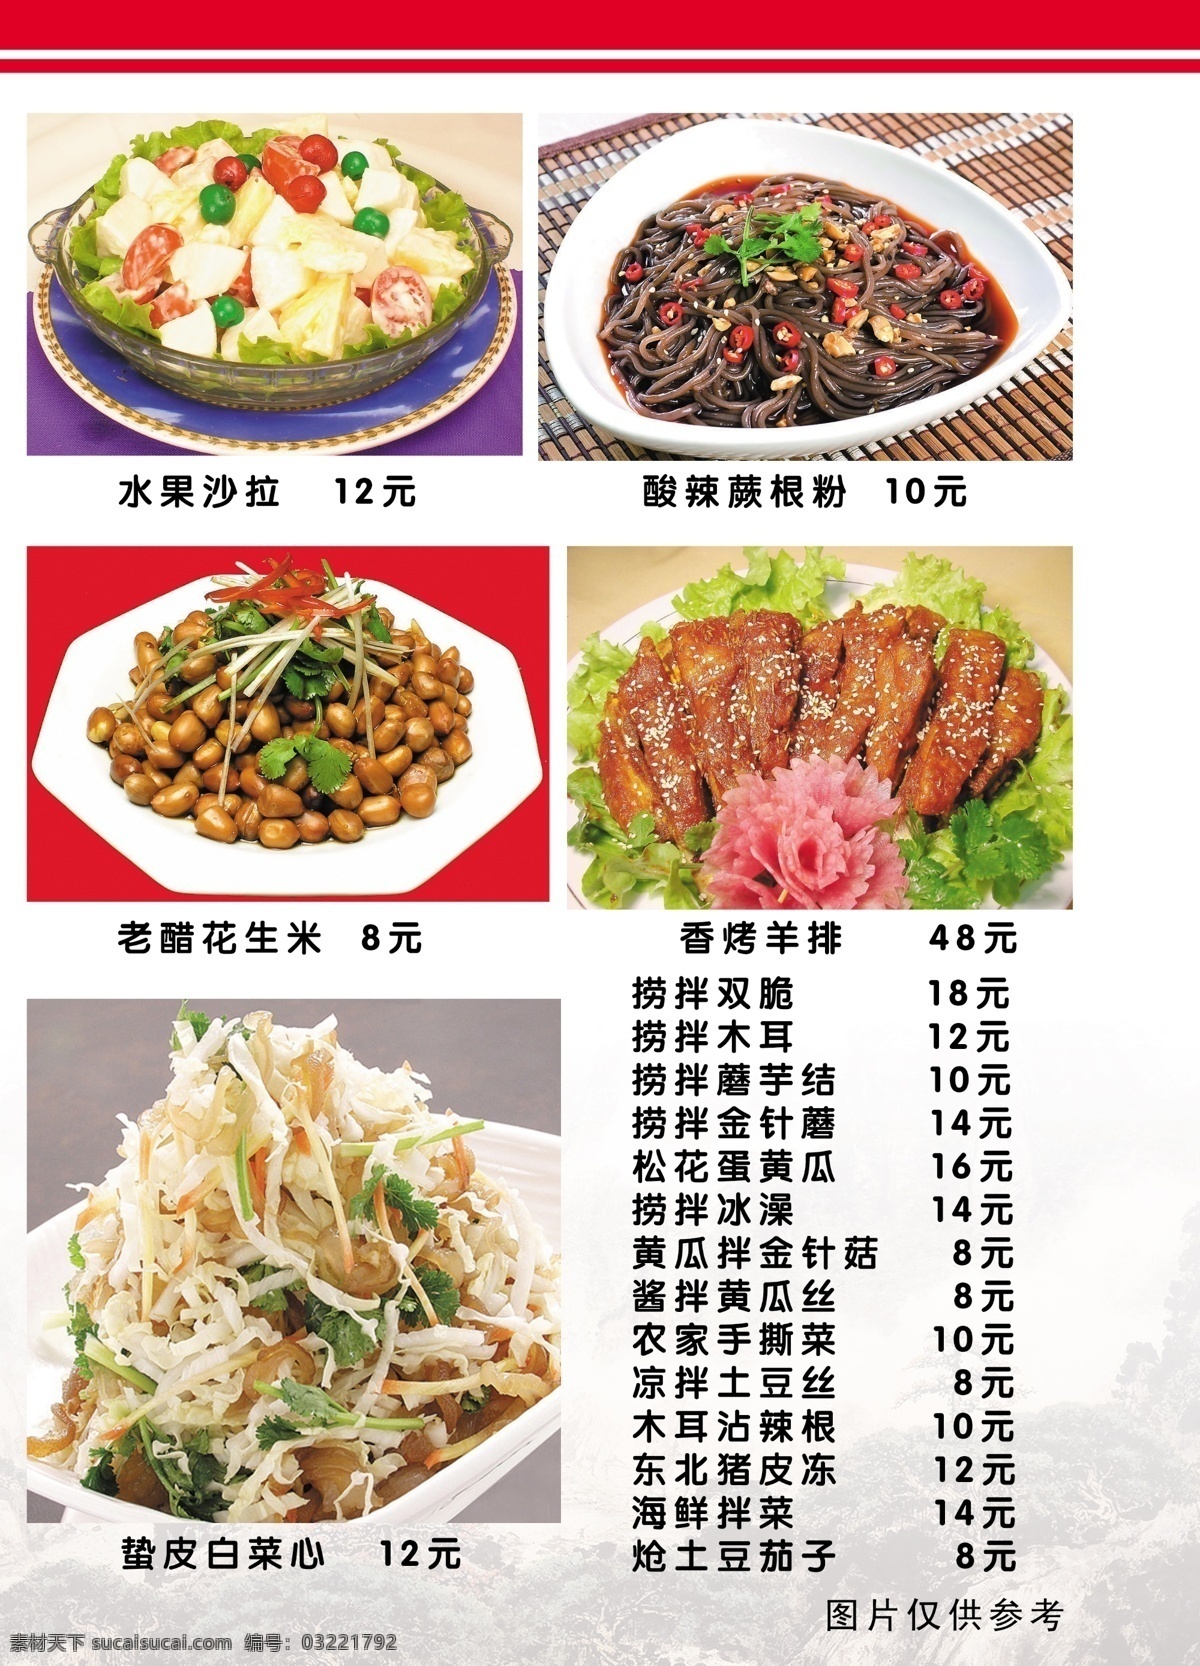 香 村 饭店 菜谱 食品餐饮 菜单菜谱 分层psd 平面广告 海报 设计素材 平面模板 psd源文件 白色